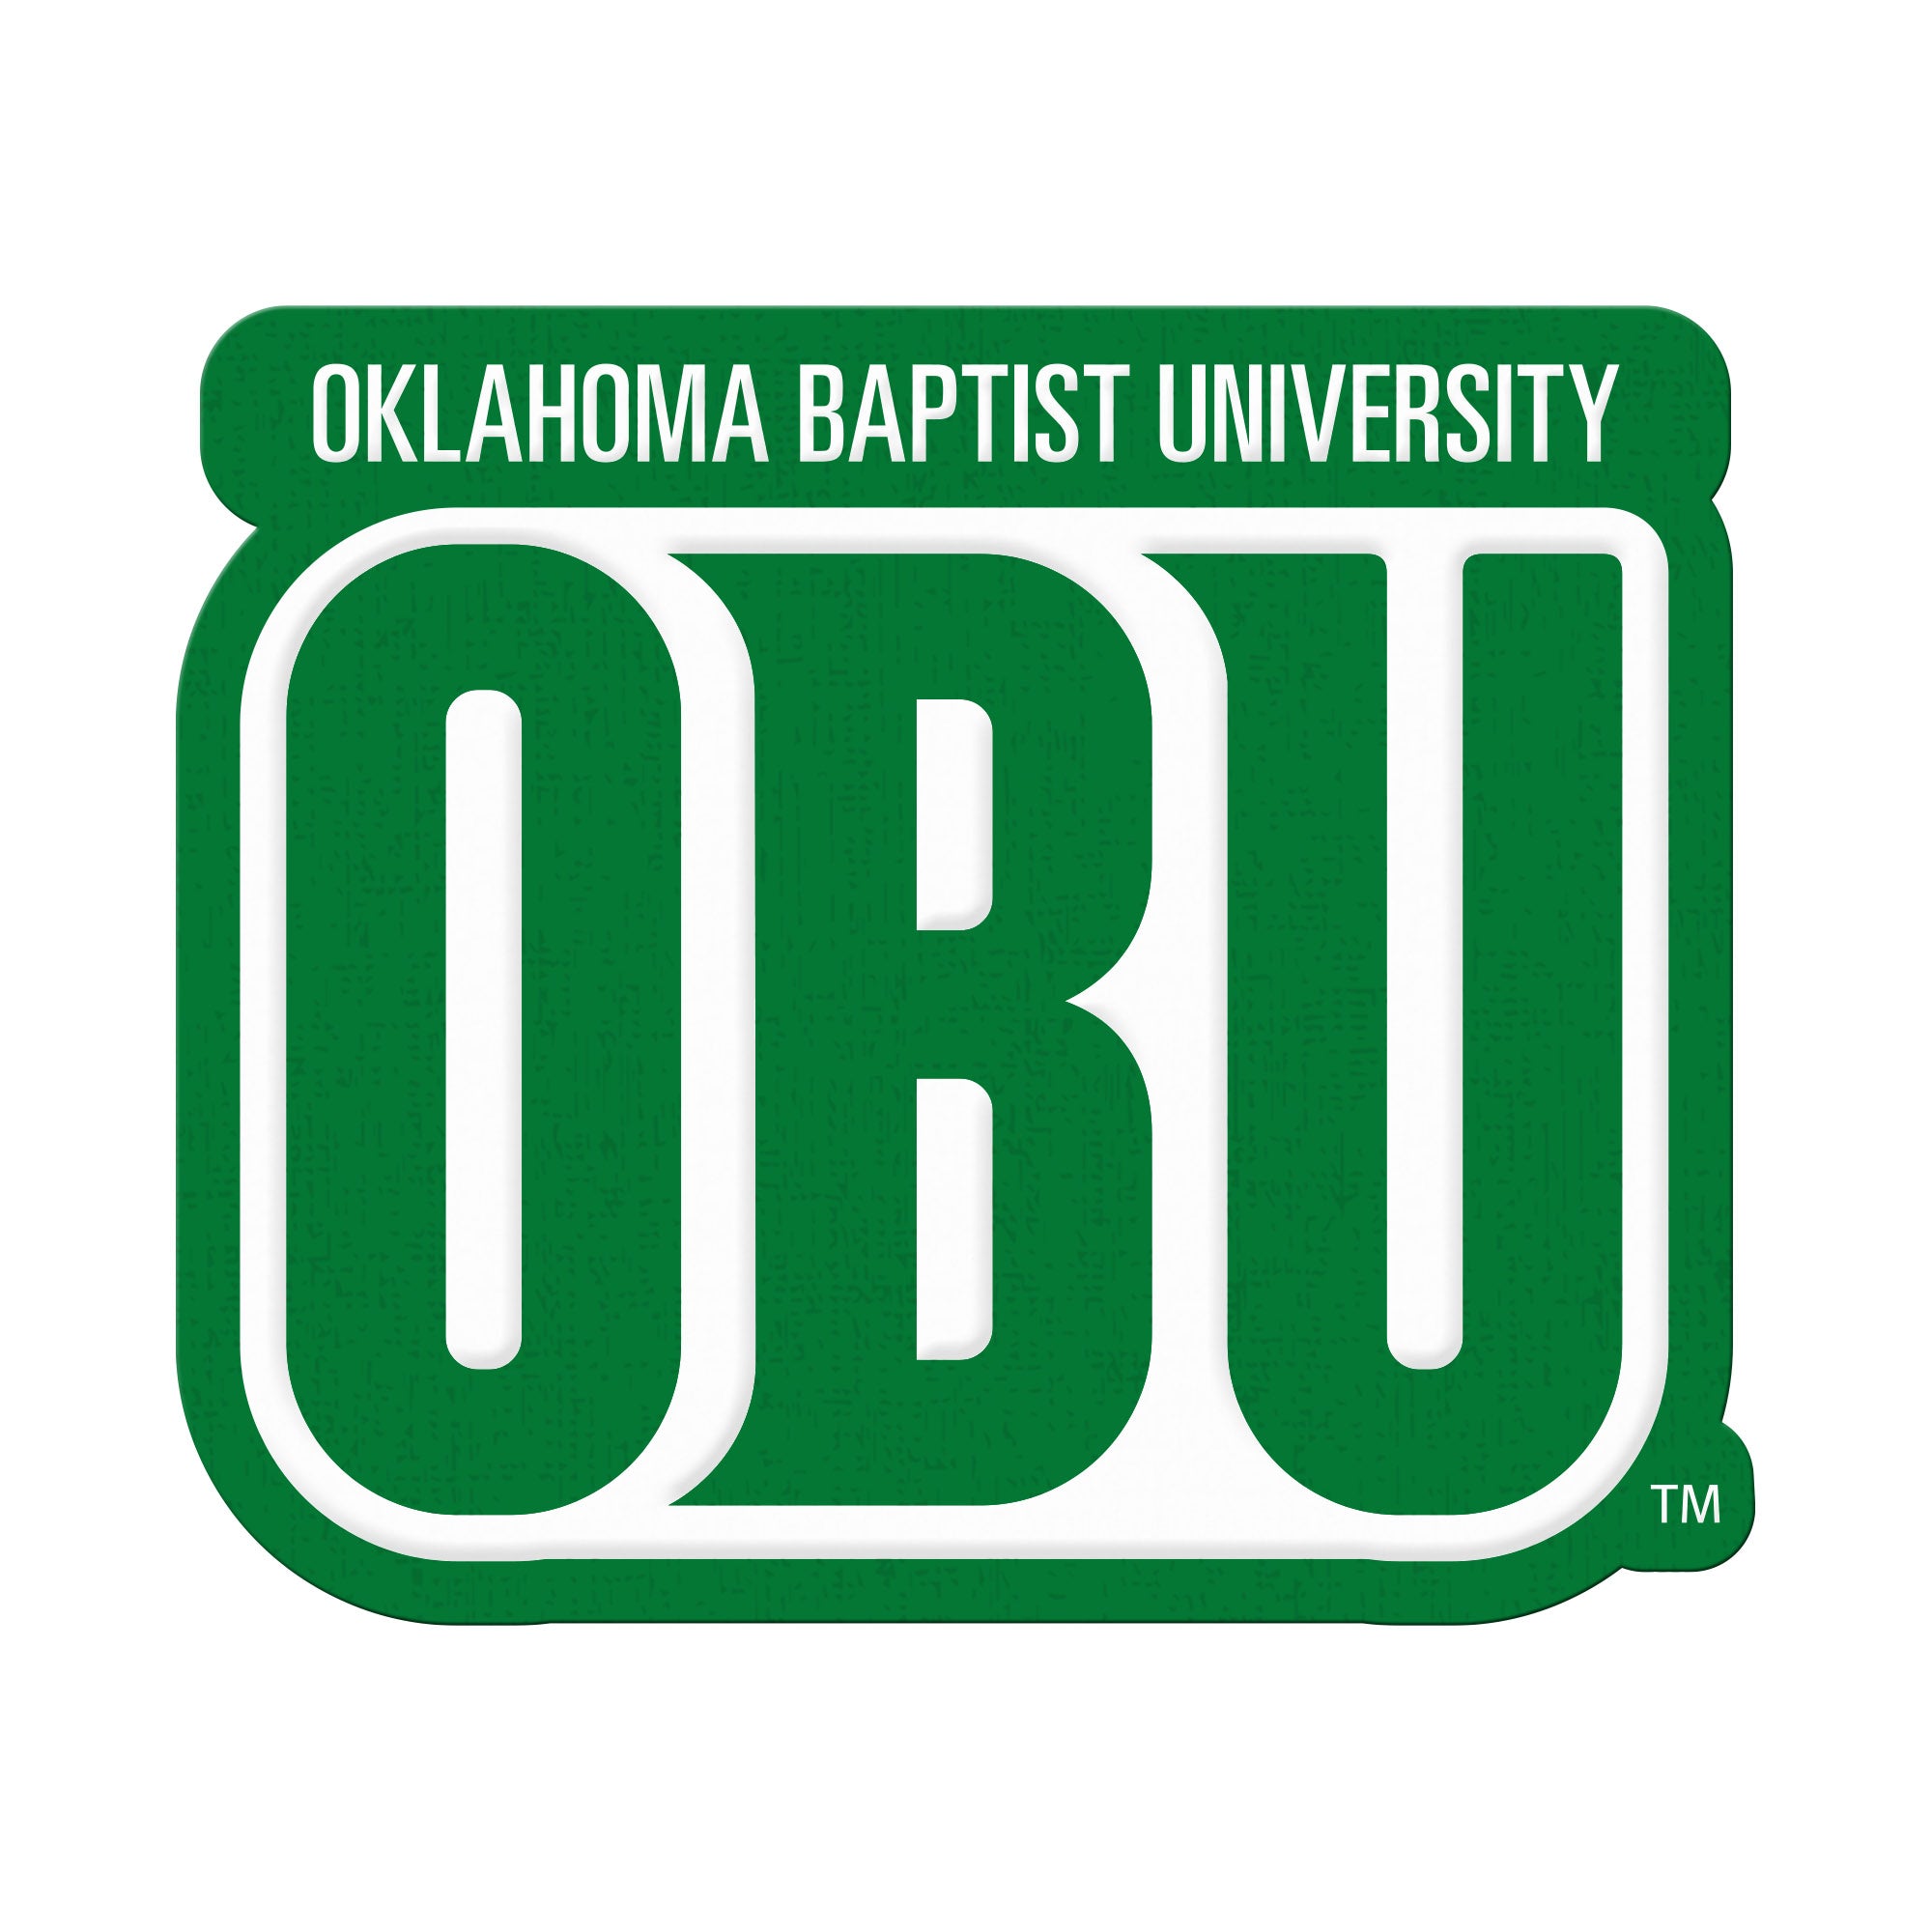 Buy a brick or donate to - Oklahoma Baptist University